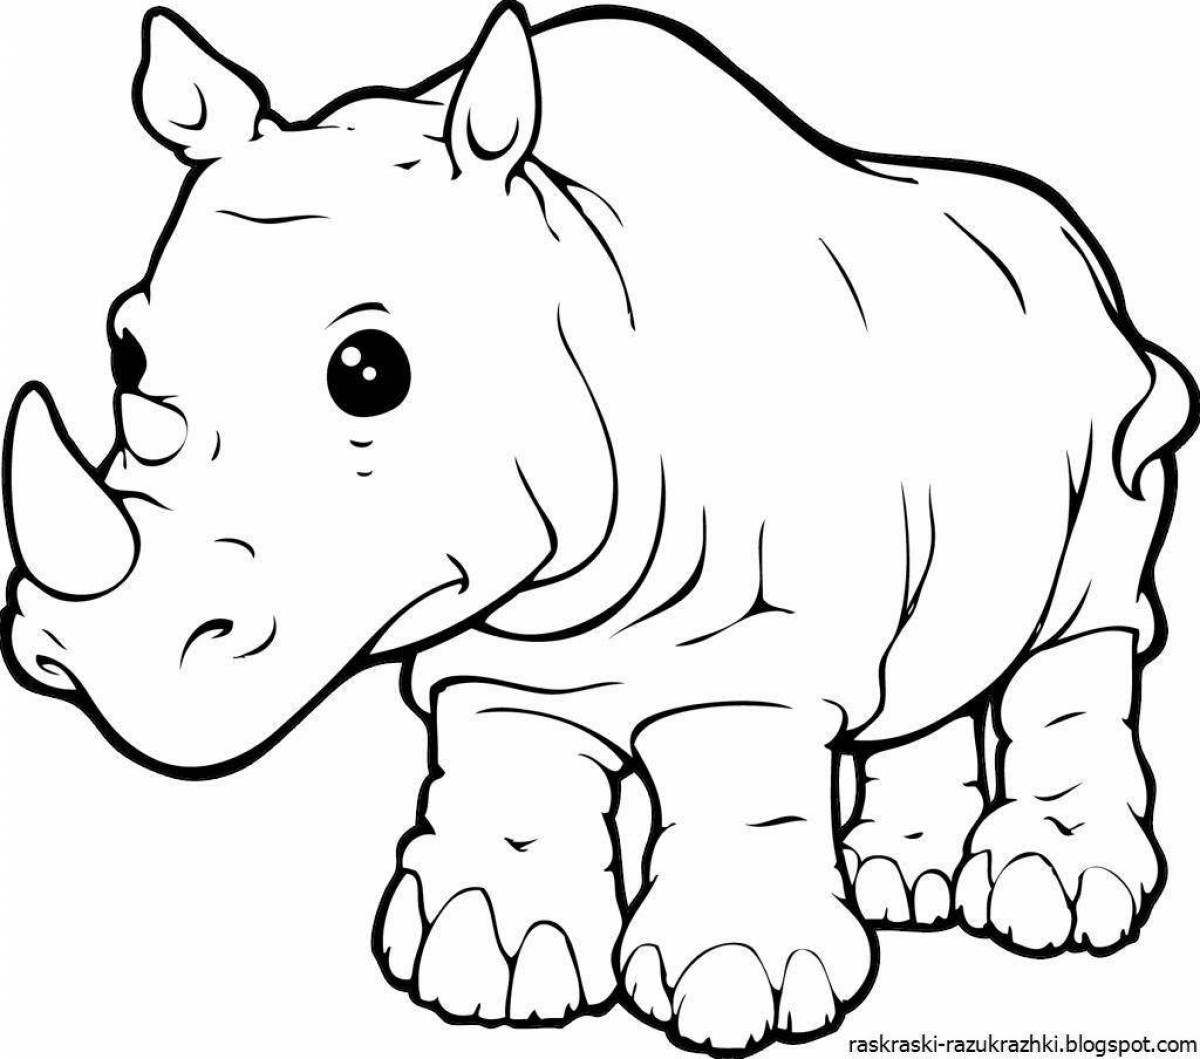 Сказочная раскраска носорога для детей